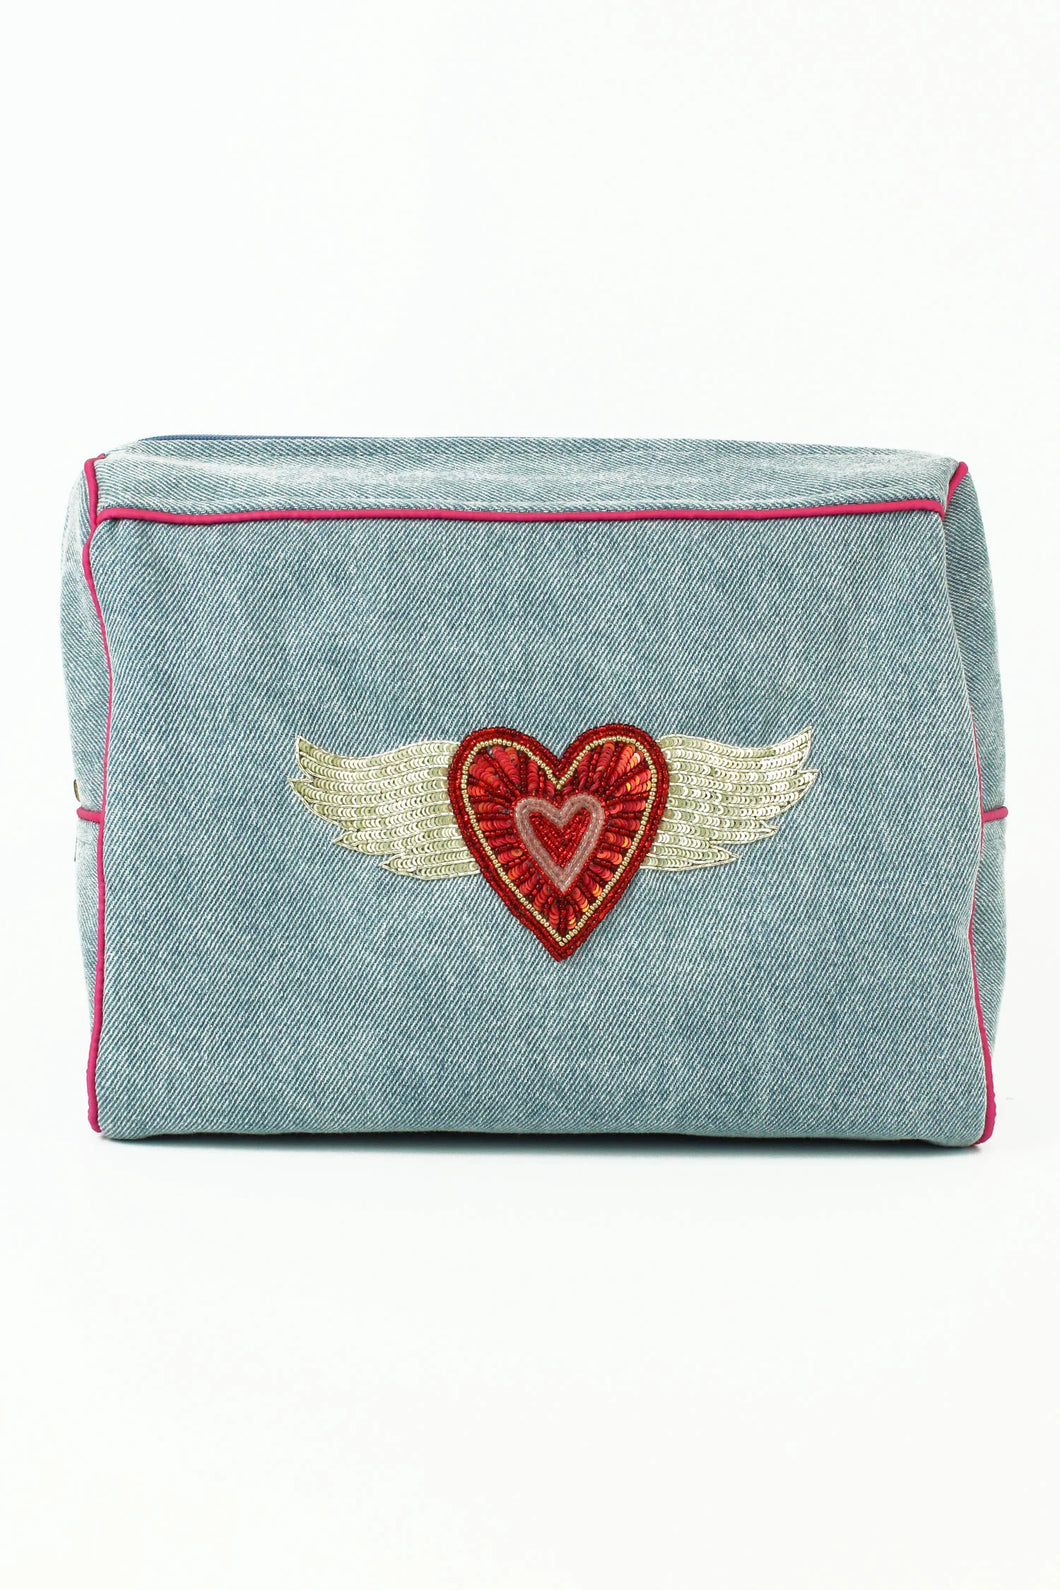 Denim make up bag with aflying heart motif